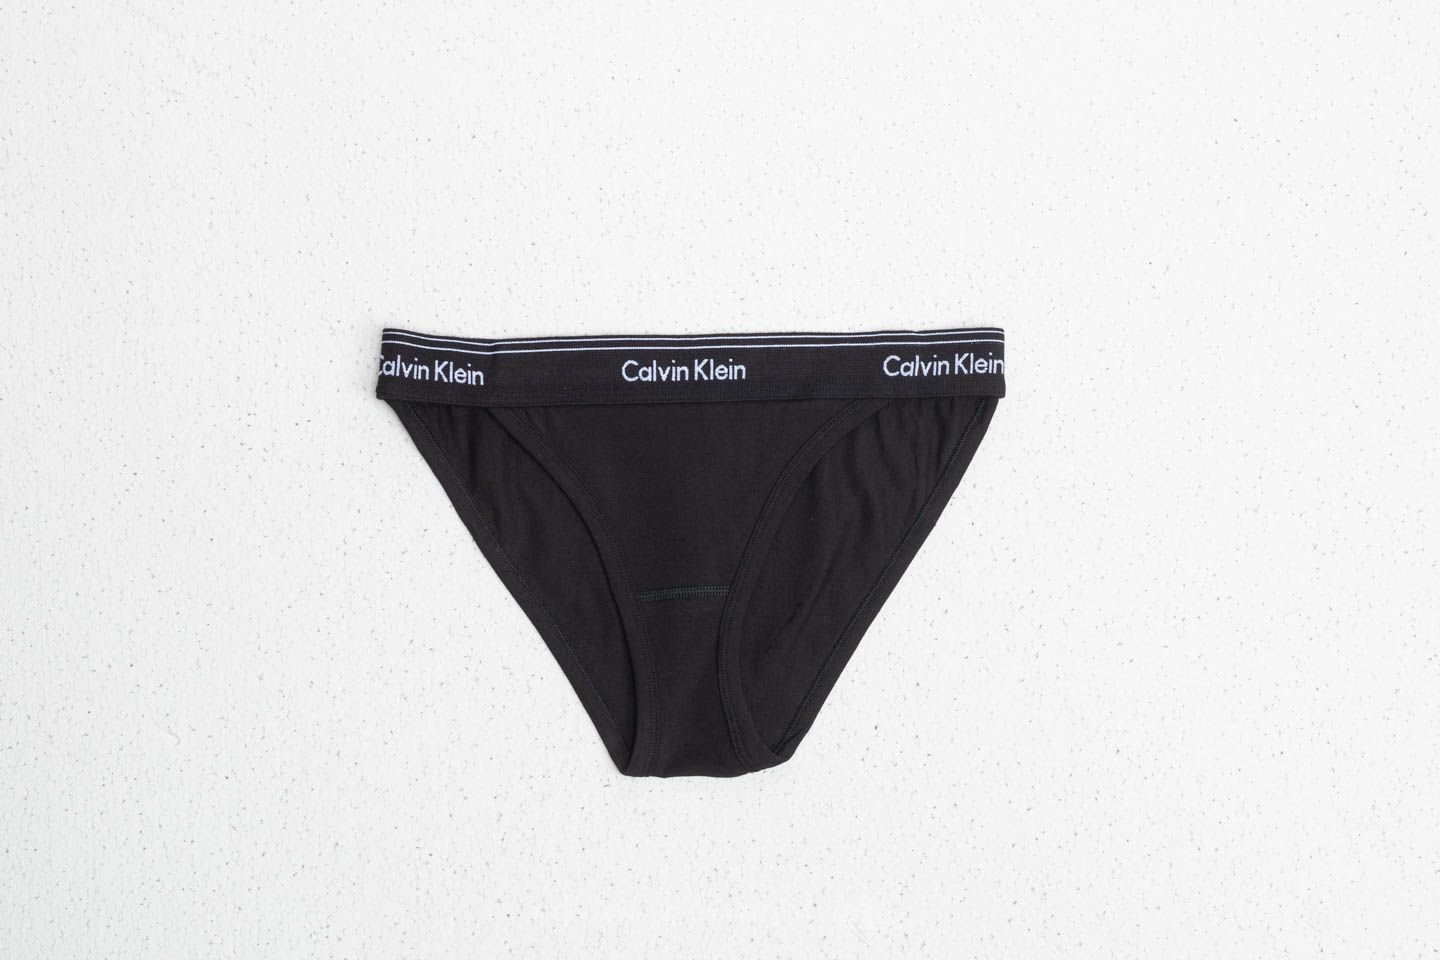 Panties Calvin Klein Tanga (High Leg) Black